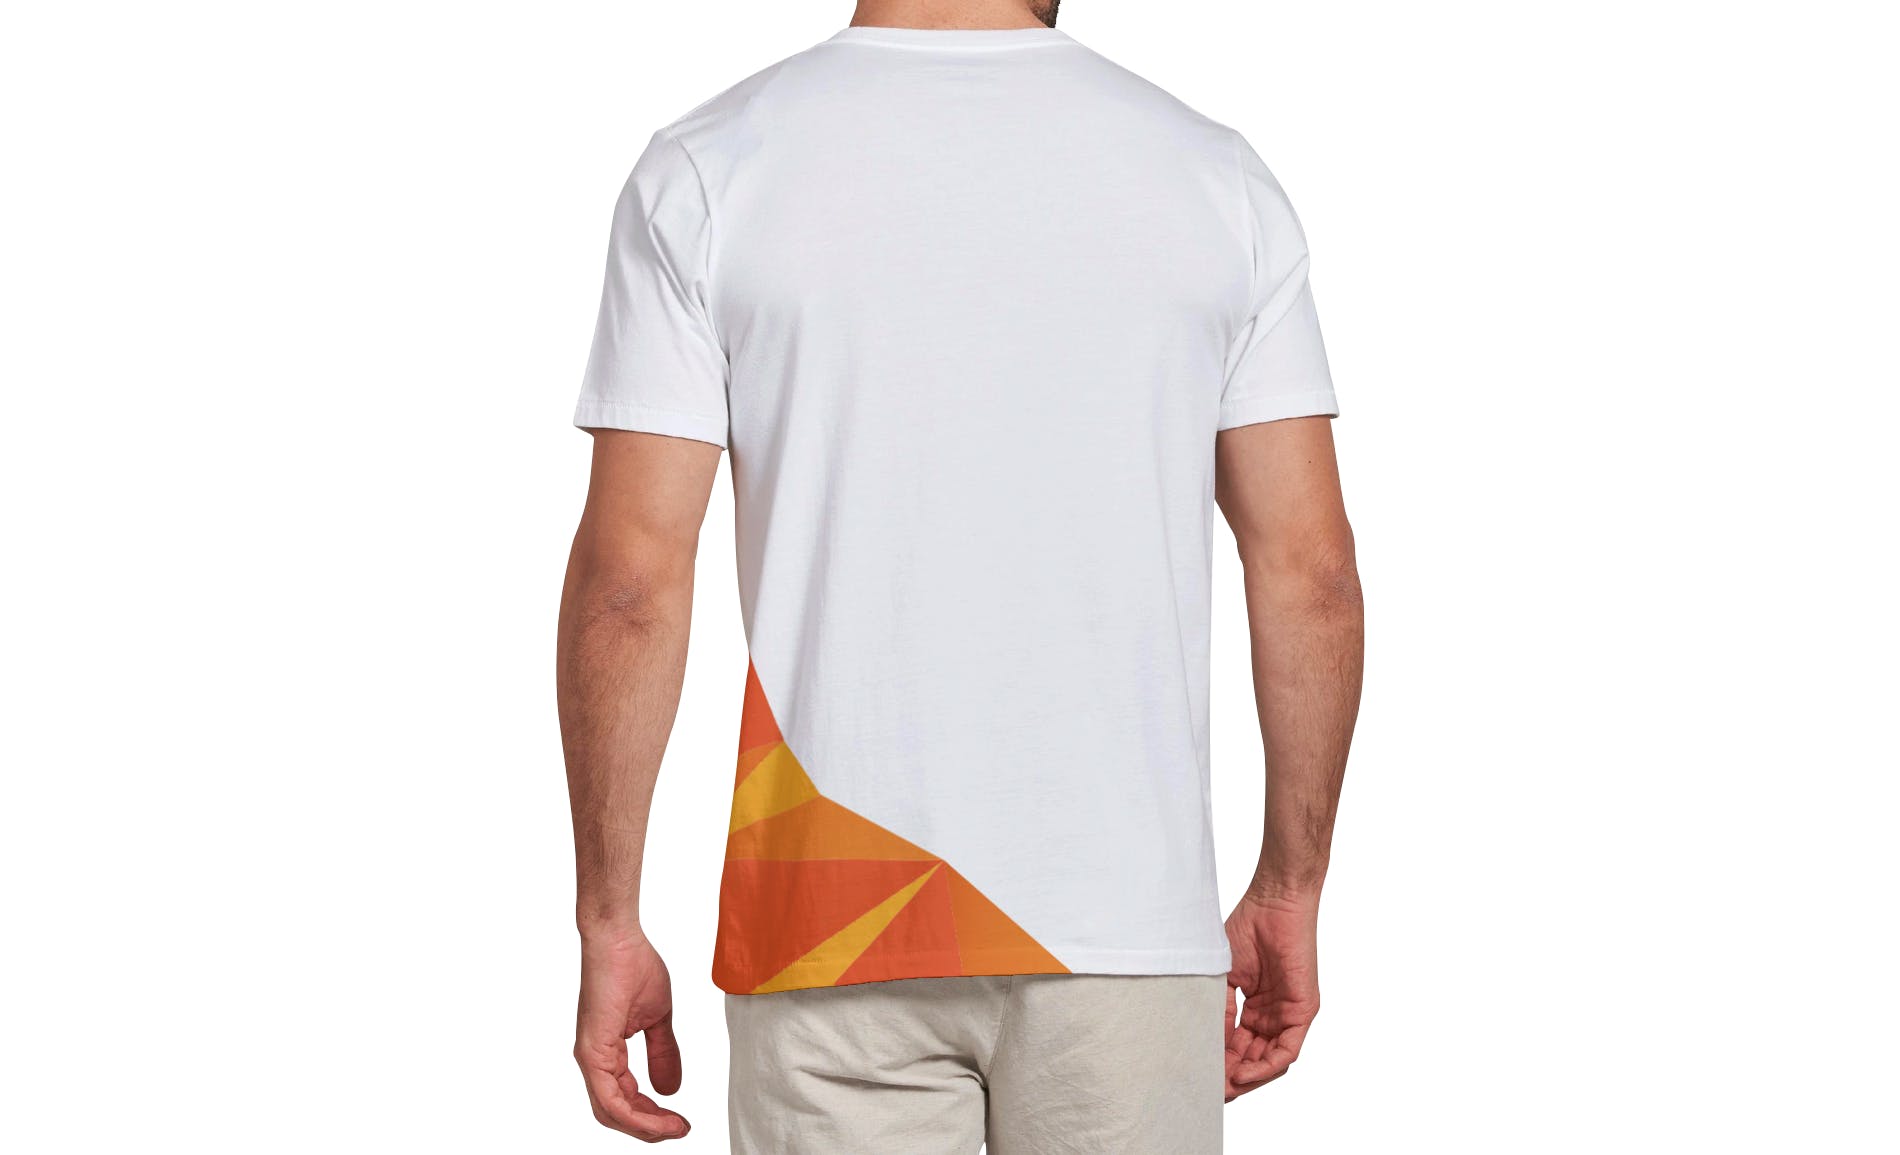 男士T恤印花设计效果图样机大洋岛精选v03 T-shirt Mockup Vol 03插图3